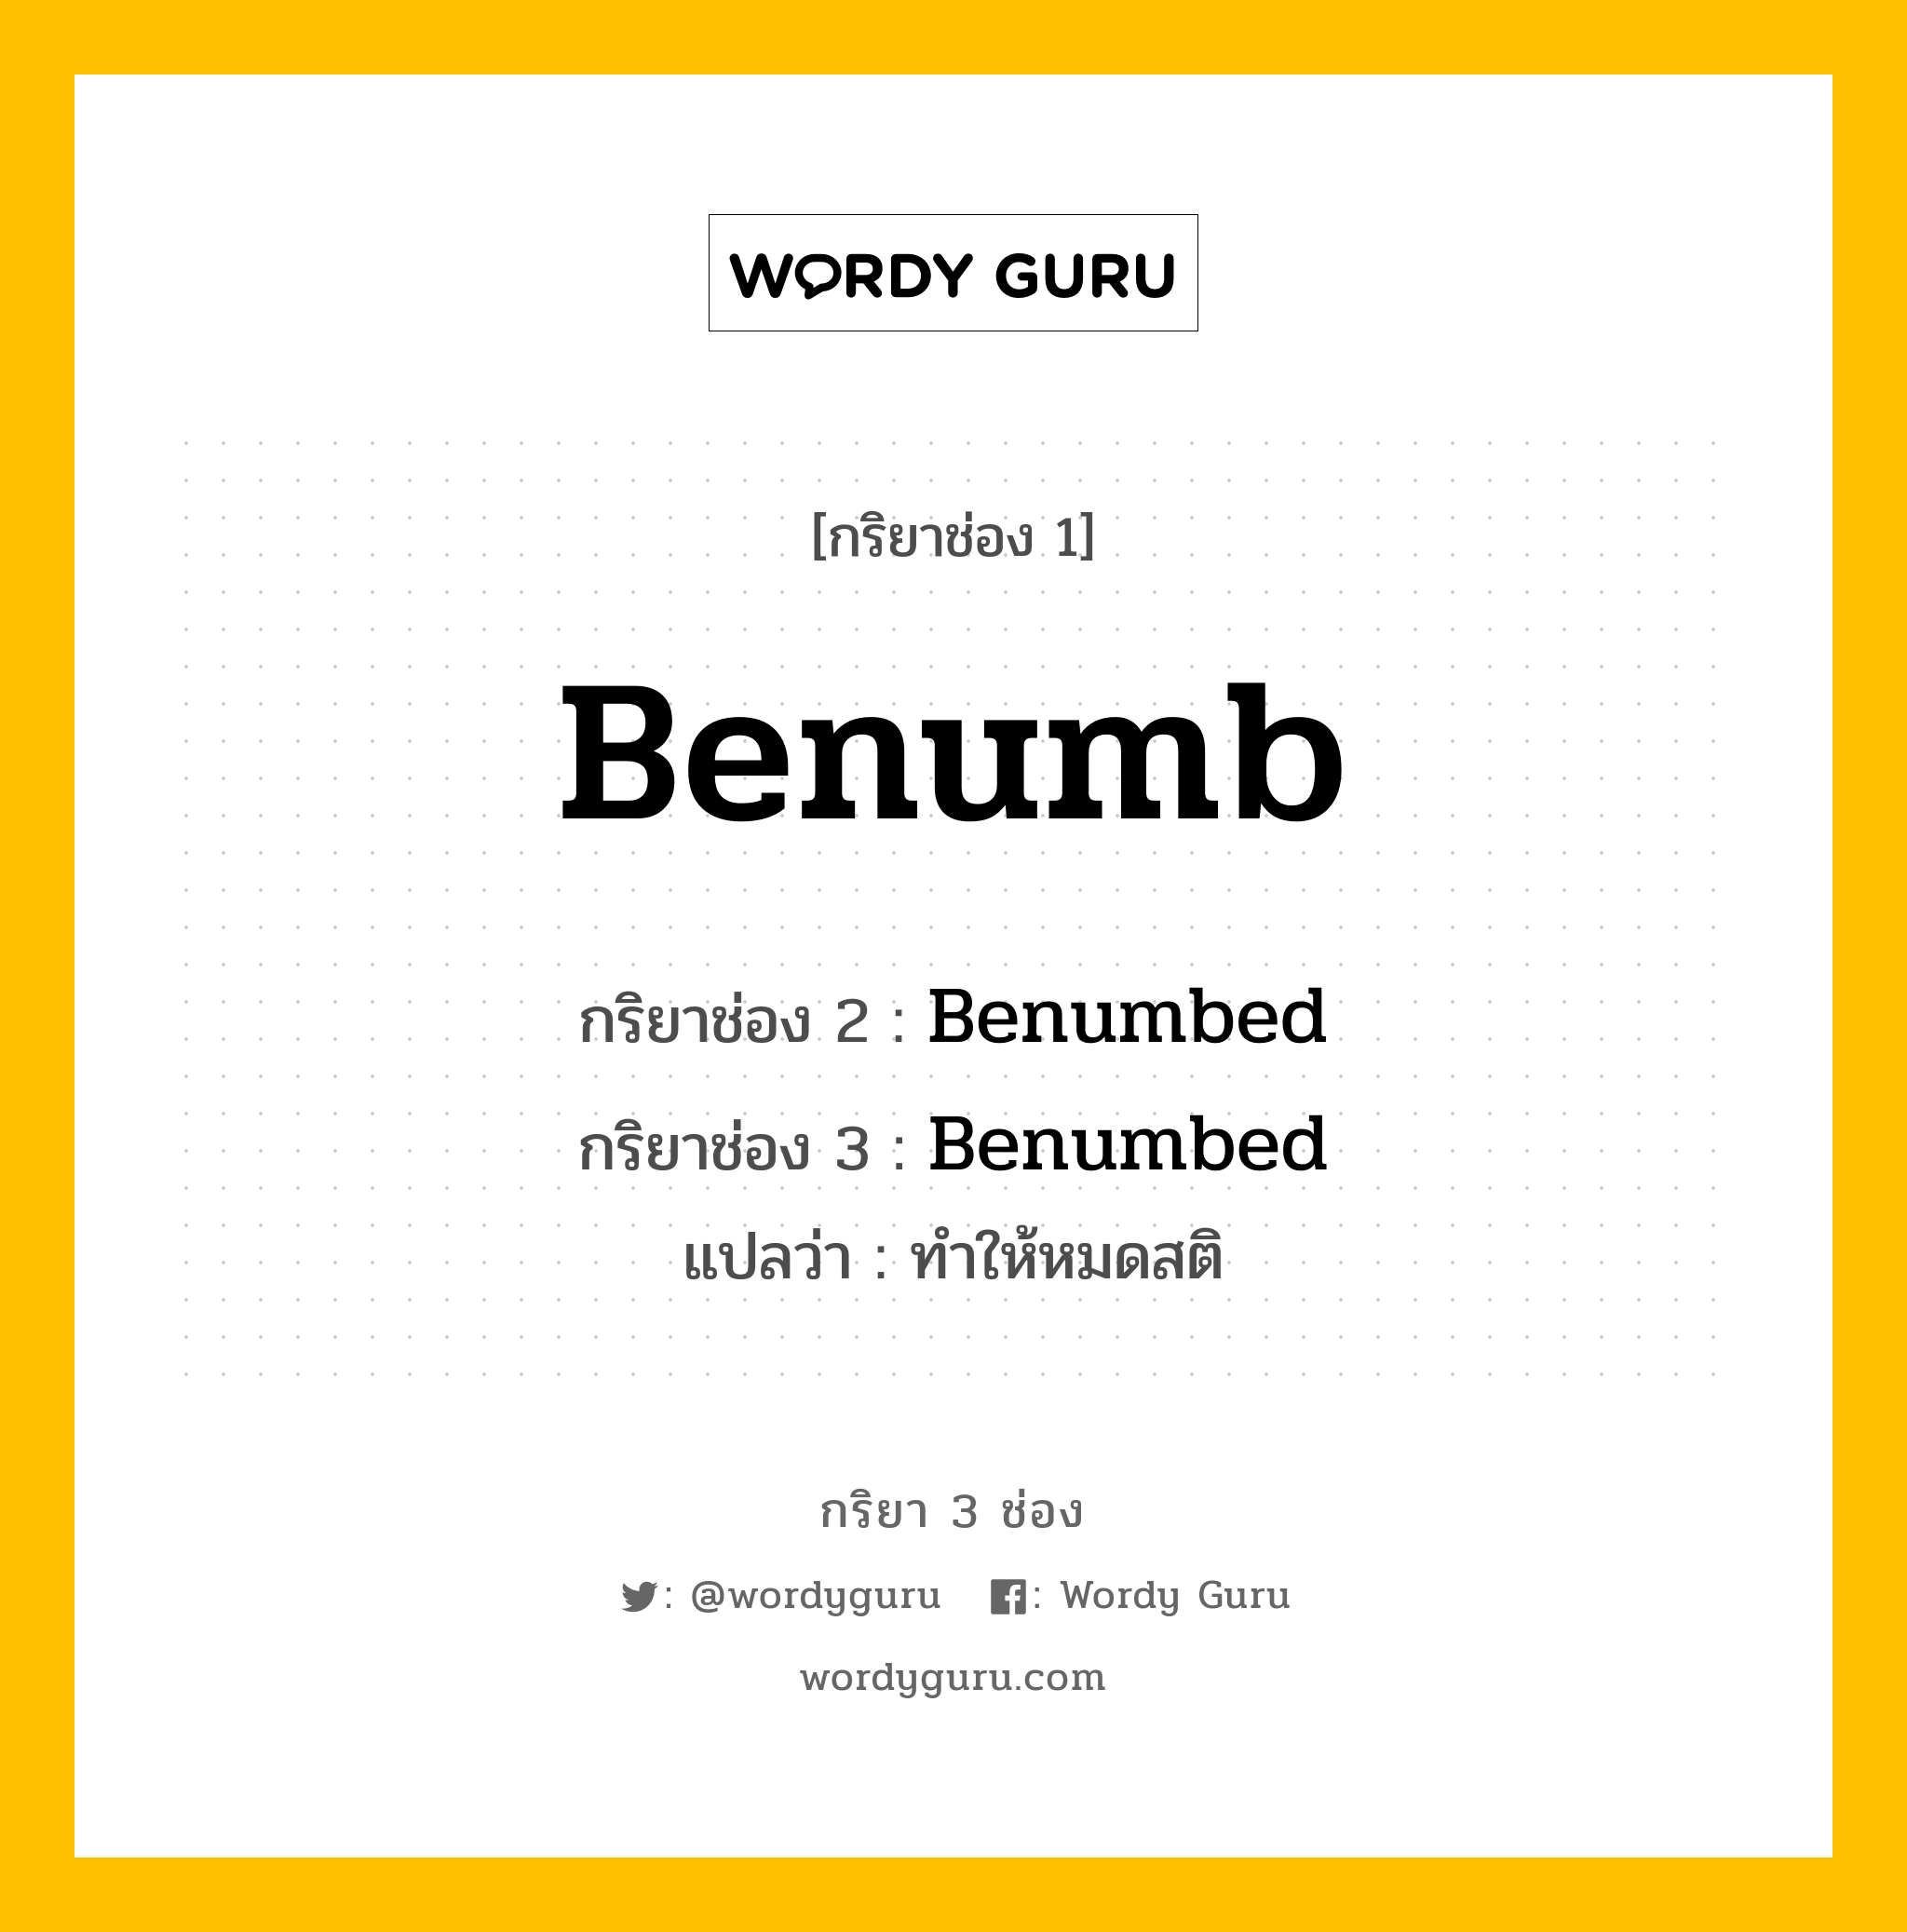 กริยา 3 ช่อง: Benumb ช่อง 2 Benumb ช่อง 3 คืออะไร, กริยาช่อง 1 Benumb กริยาช่อง 2 Benumbed กริยาช่อง 3 Benumbed แปลว่า ทำให้หมดสติ หมวด Regular Verb